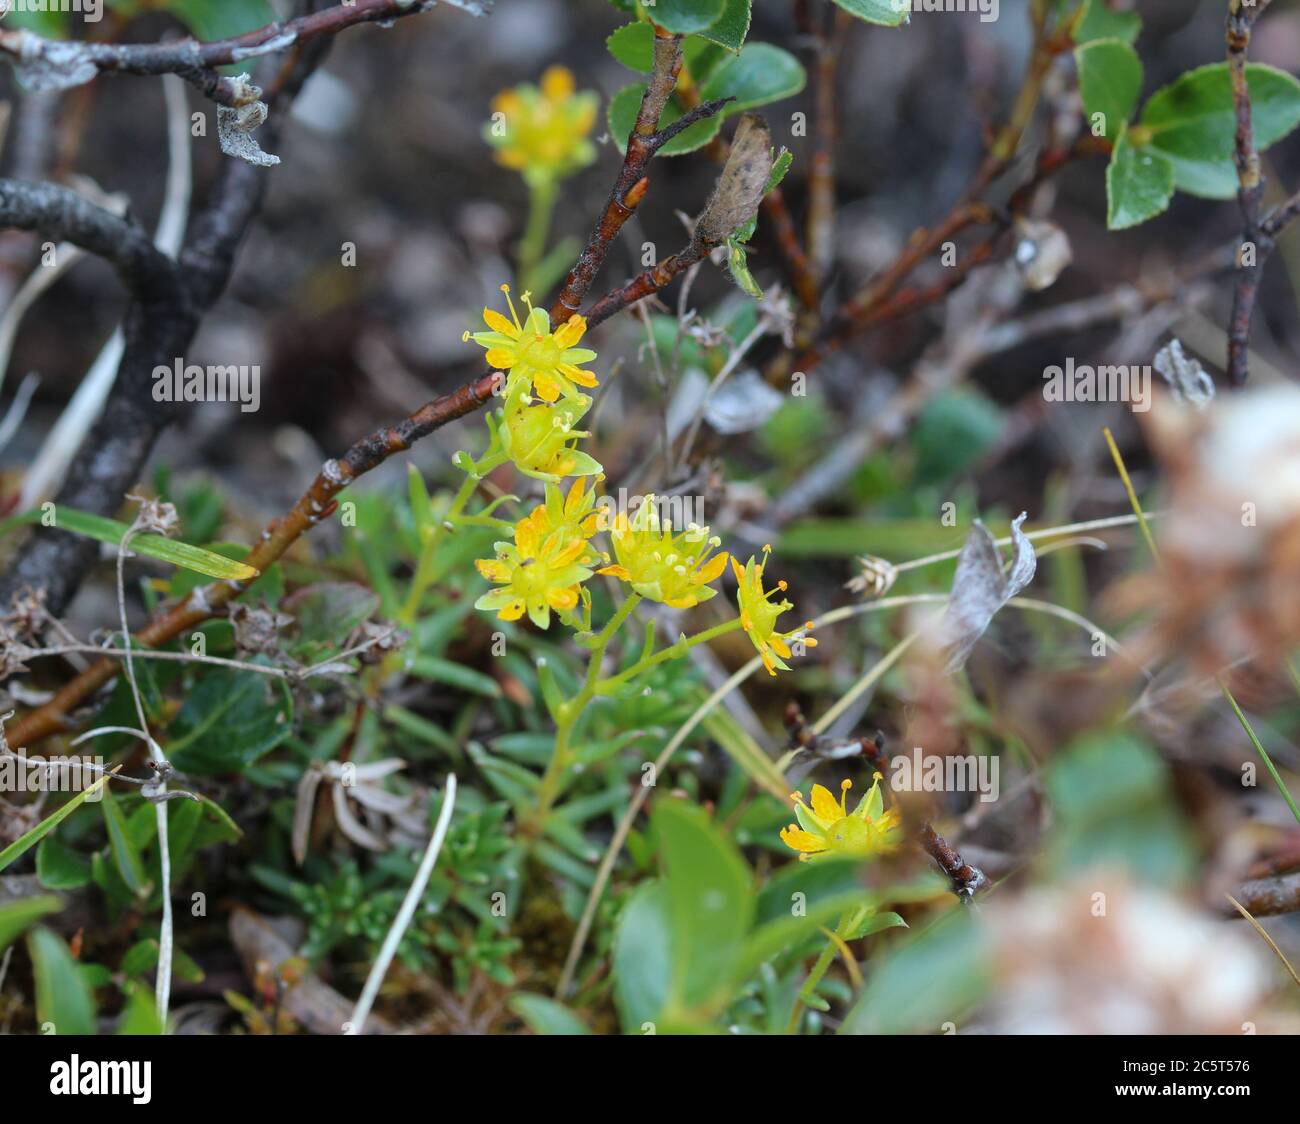 Close up of Saxifraga aizoides flower, also known as yellow mountain saxifrage or yellow saxifrage Stock Photo